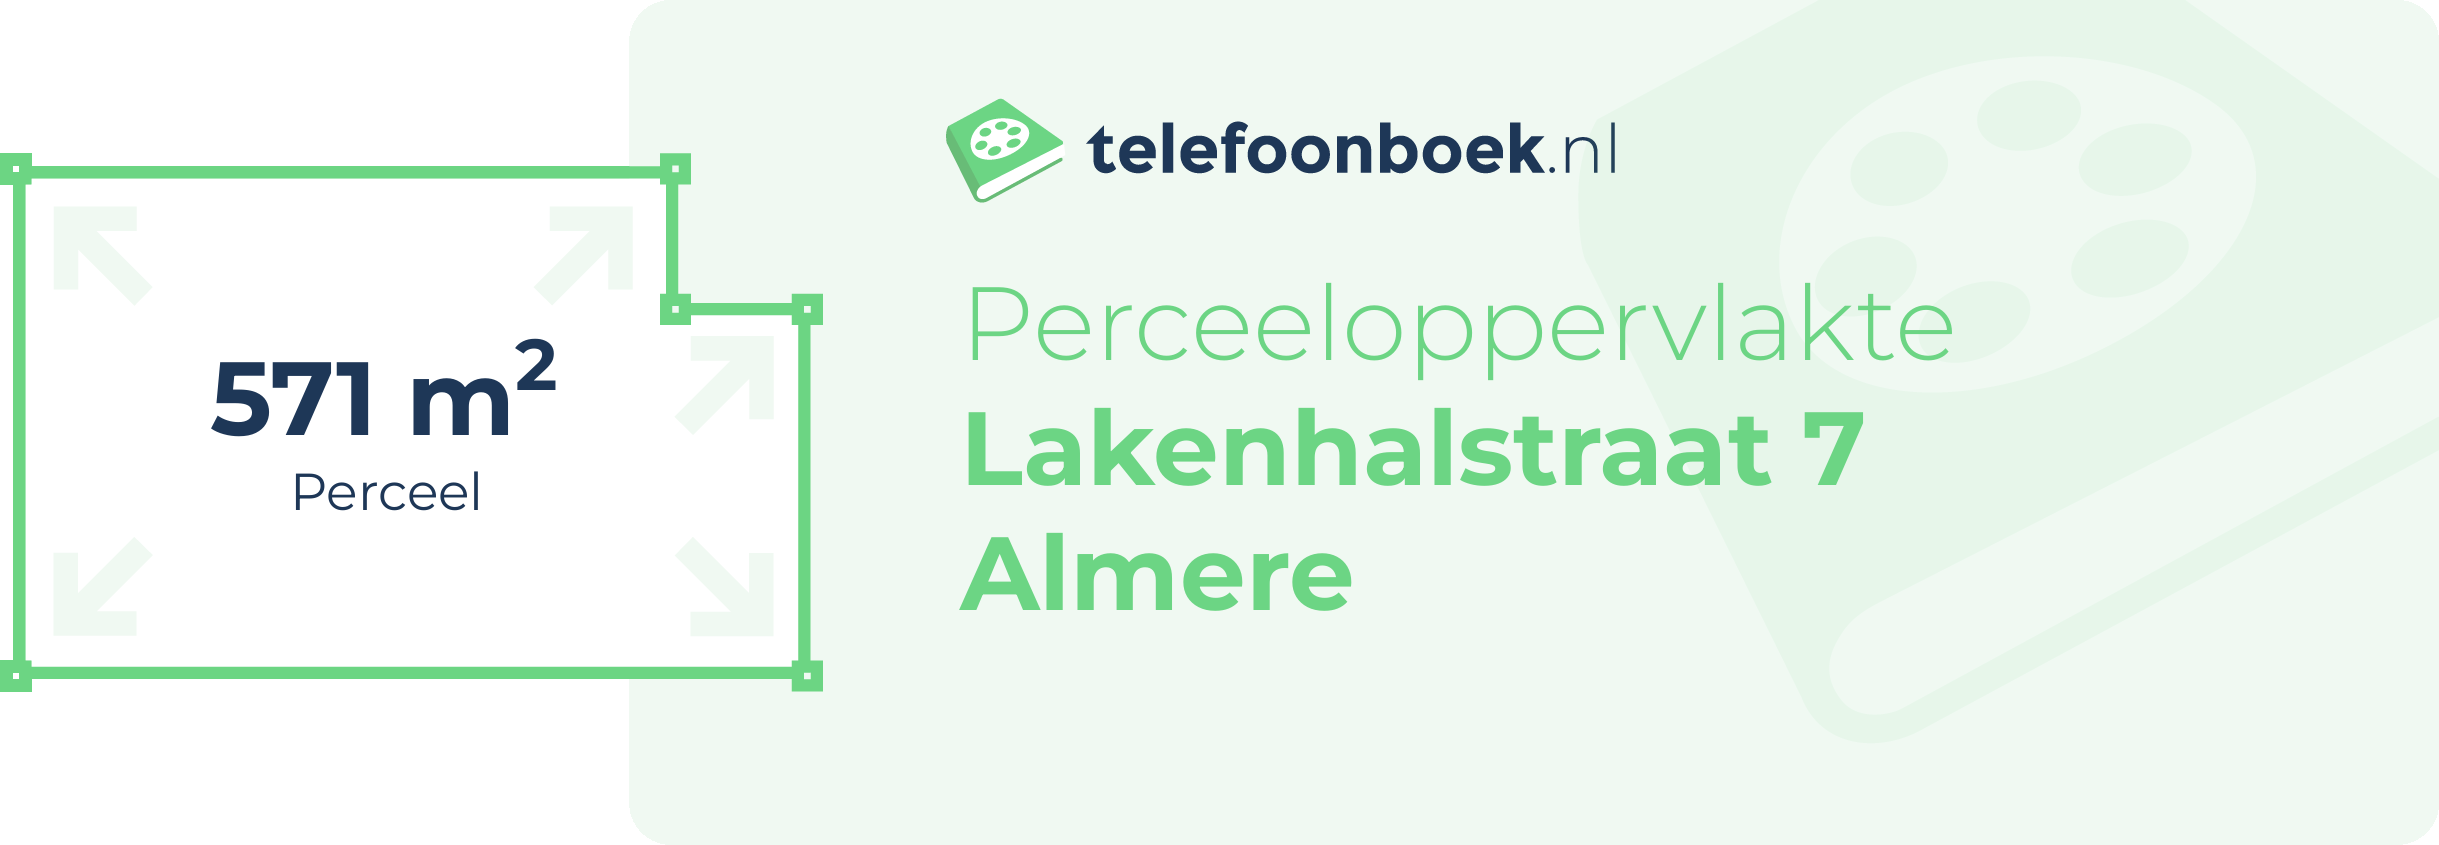 Perceeloppervlakte Lakenhalstraat 7 Almere